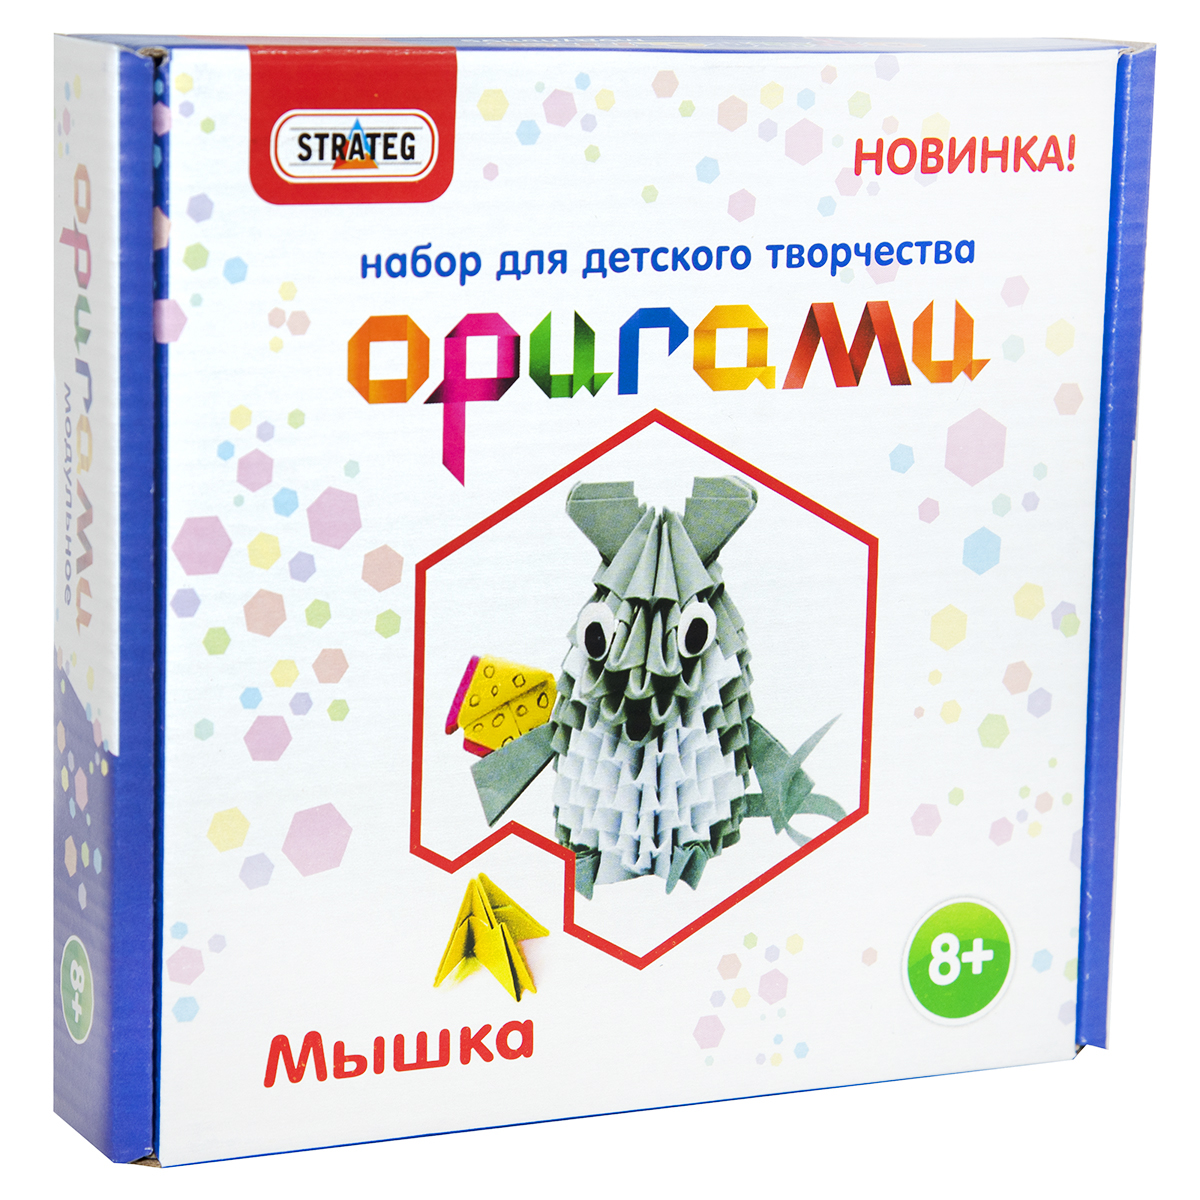 Модульное оригами Strateg на русском языке Мышка (203-3)